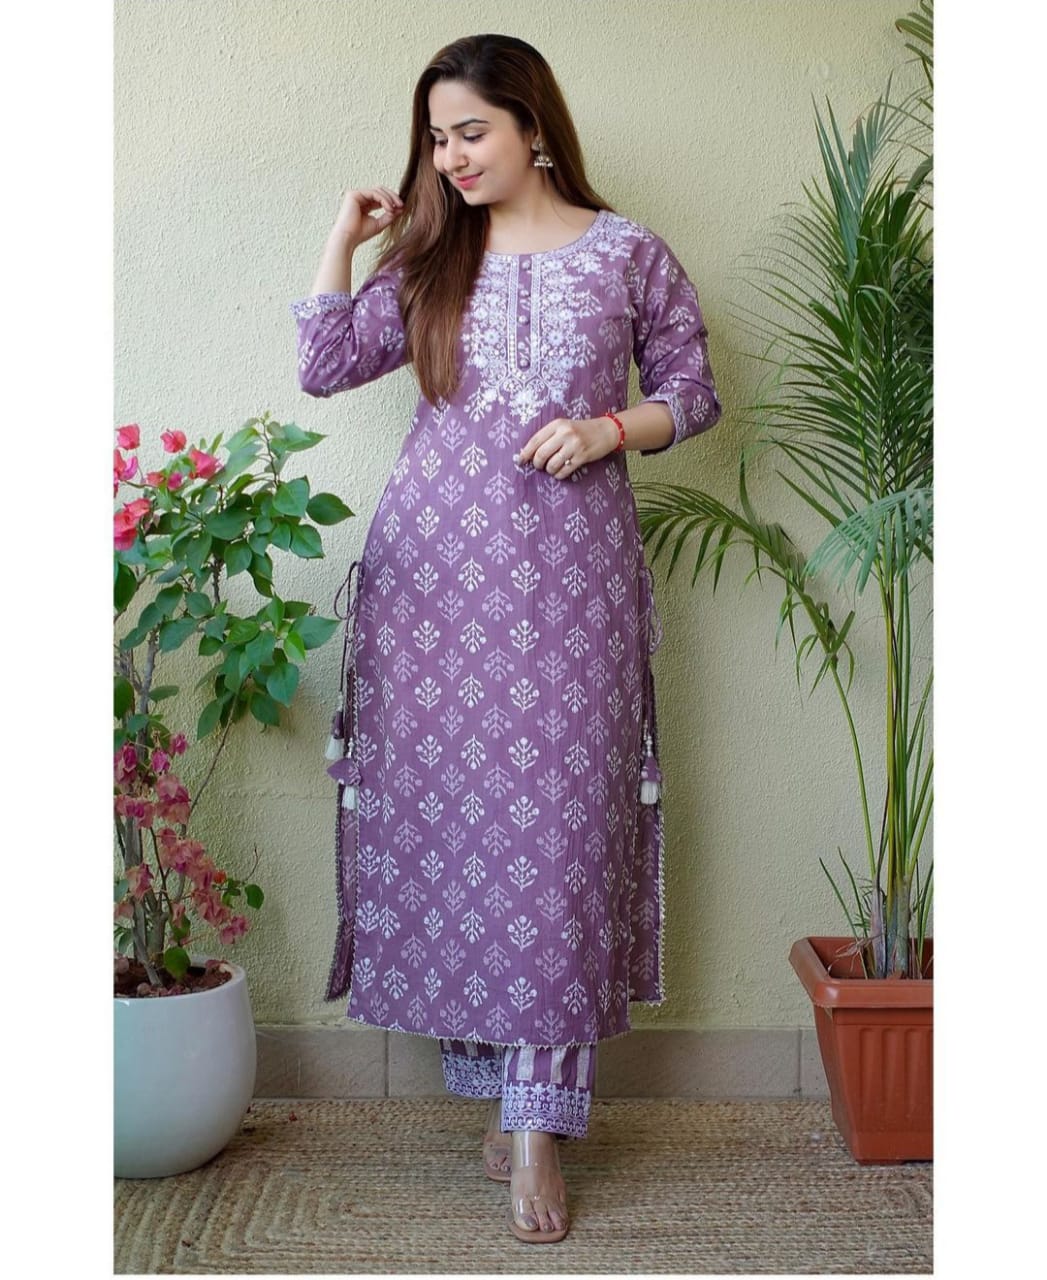 Indian Women Suit readymade Salwar Kameez Kurta Palazzo Suit India Women Kurta Suit Rayon Dress Ethnic Dress Traditional Suit